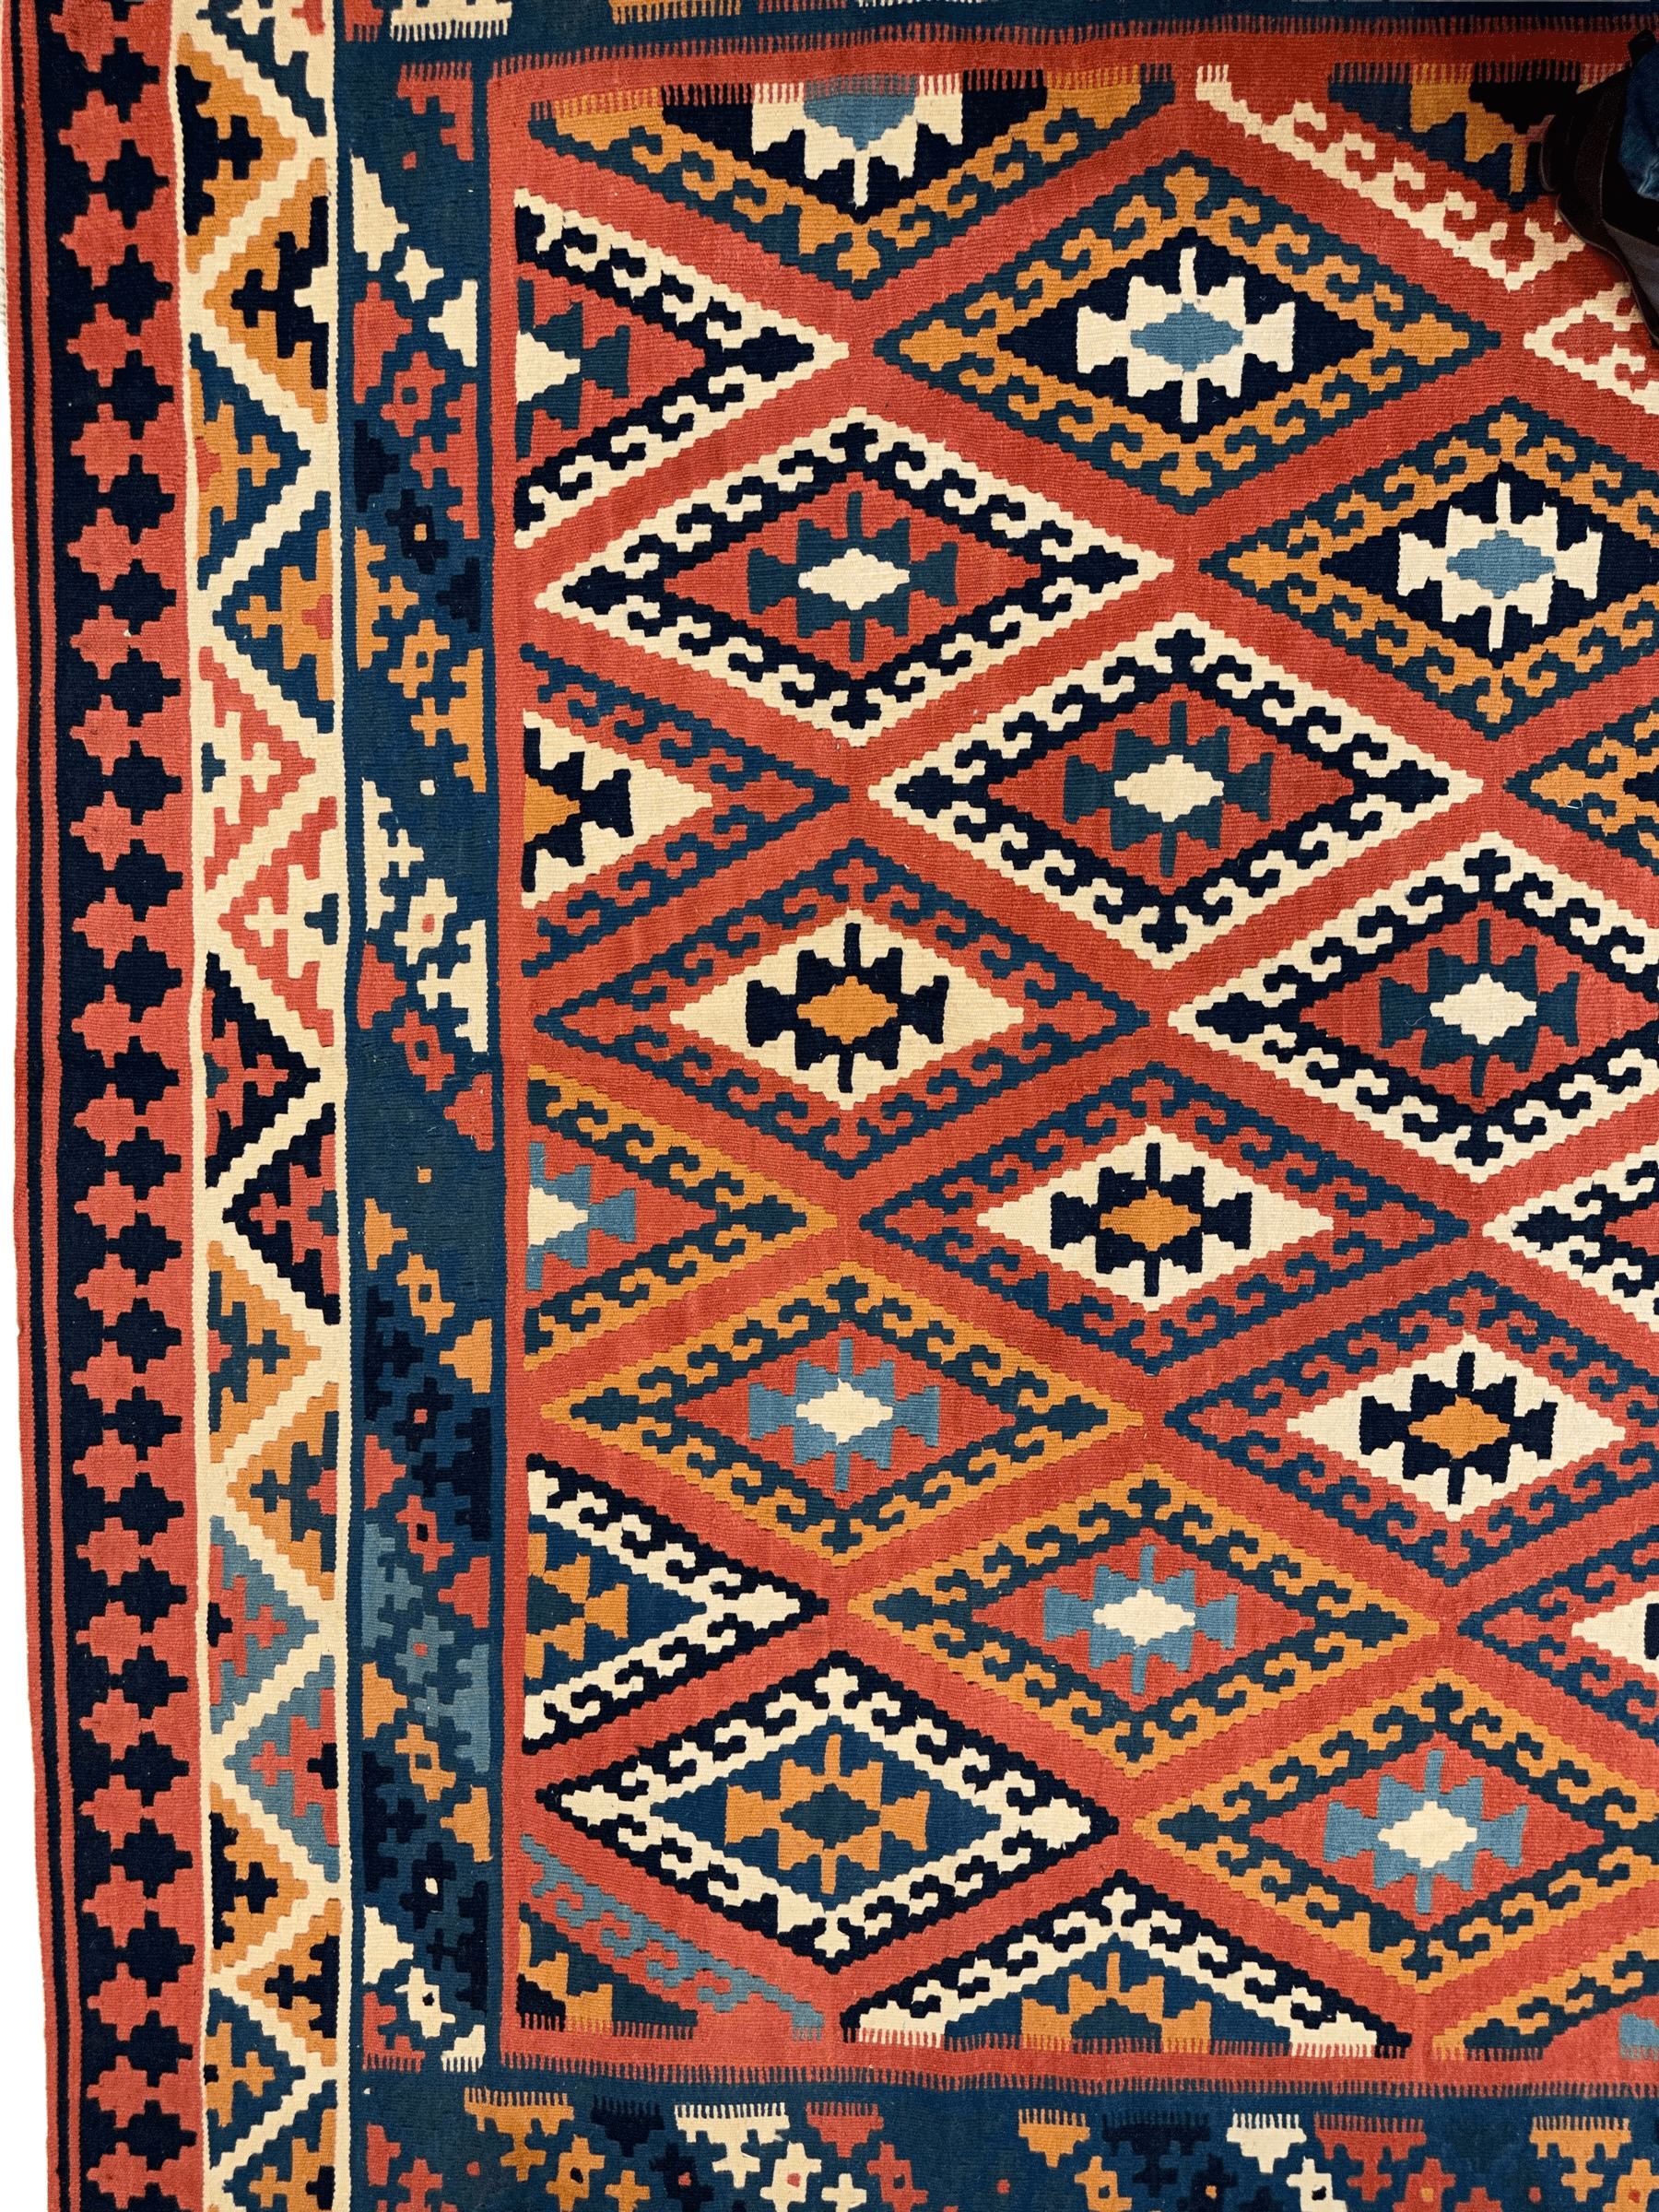 Antique Tribal Persian Qashqai Kilim Rug 8’6” x 10’6”